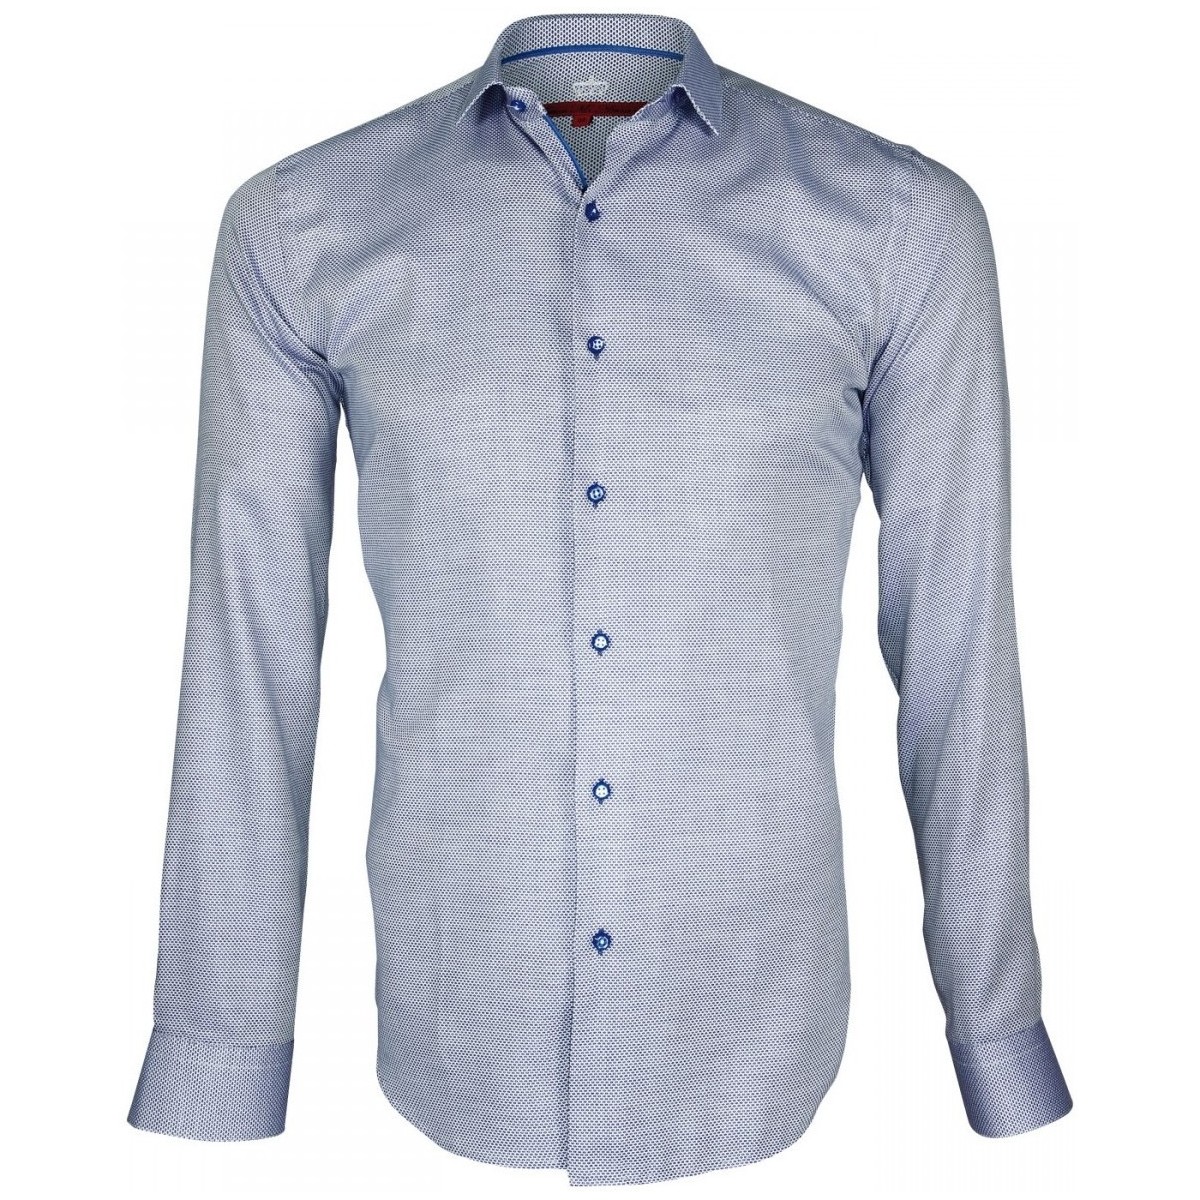 Vêtements Homme Chemises manches longues Votre ville doit contenir un minimum de 2 caractères chemise tissu armure hasting bleu Bleu